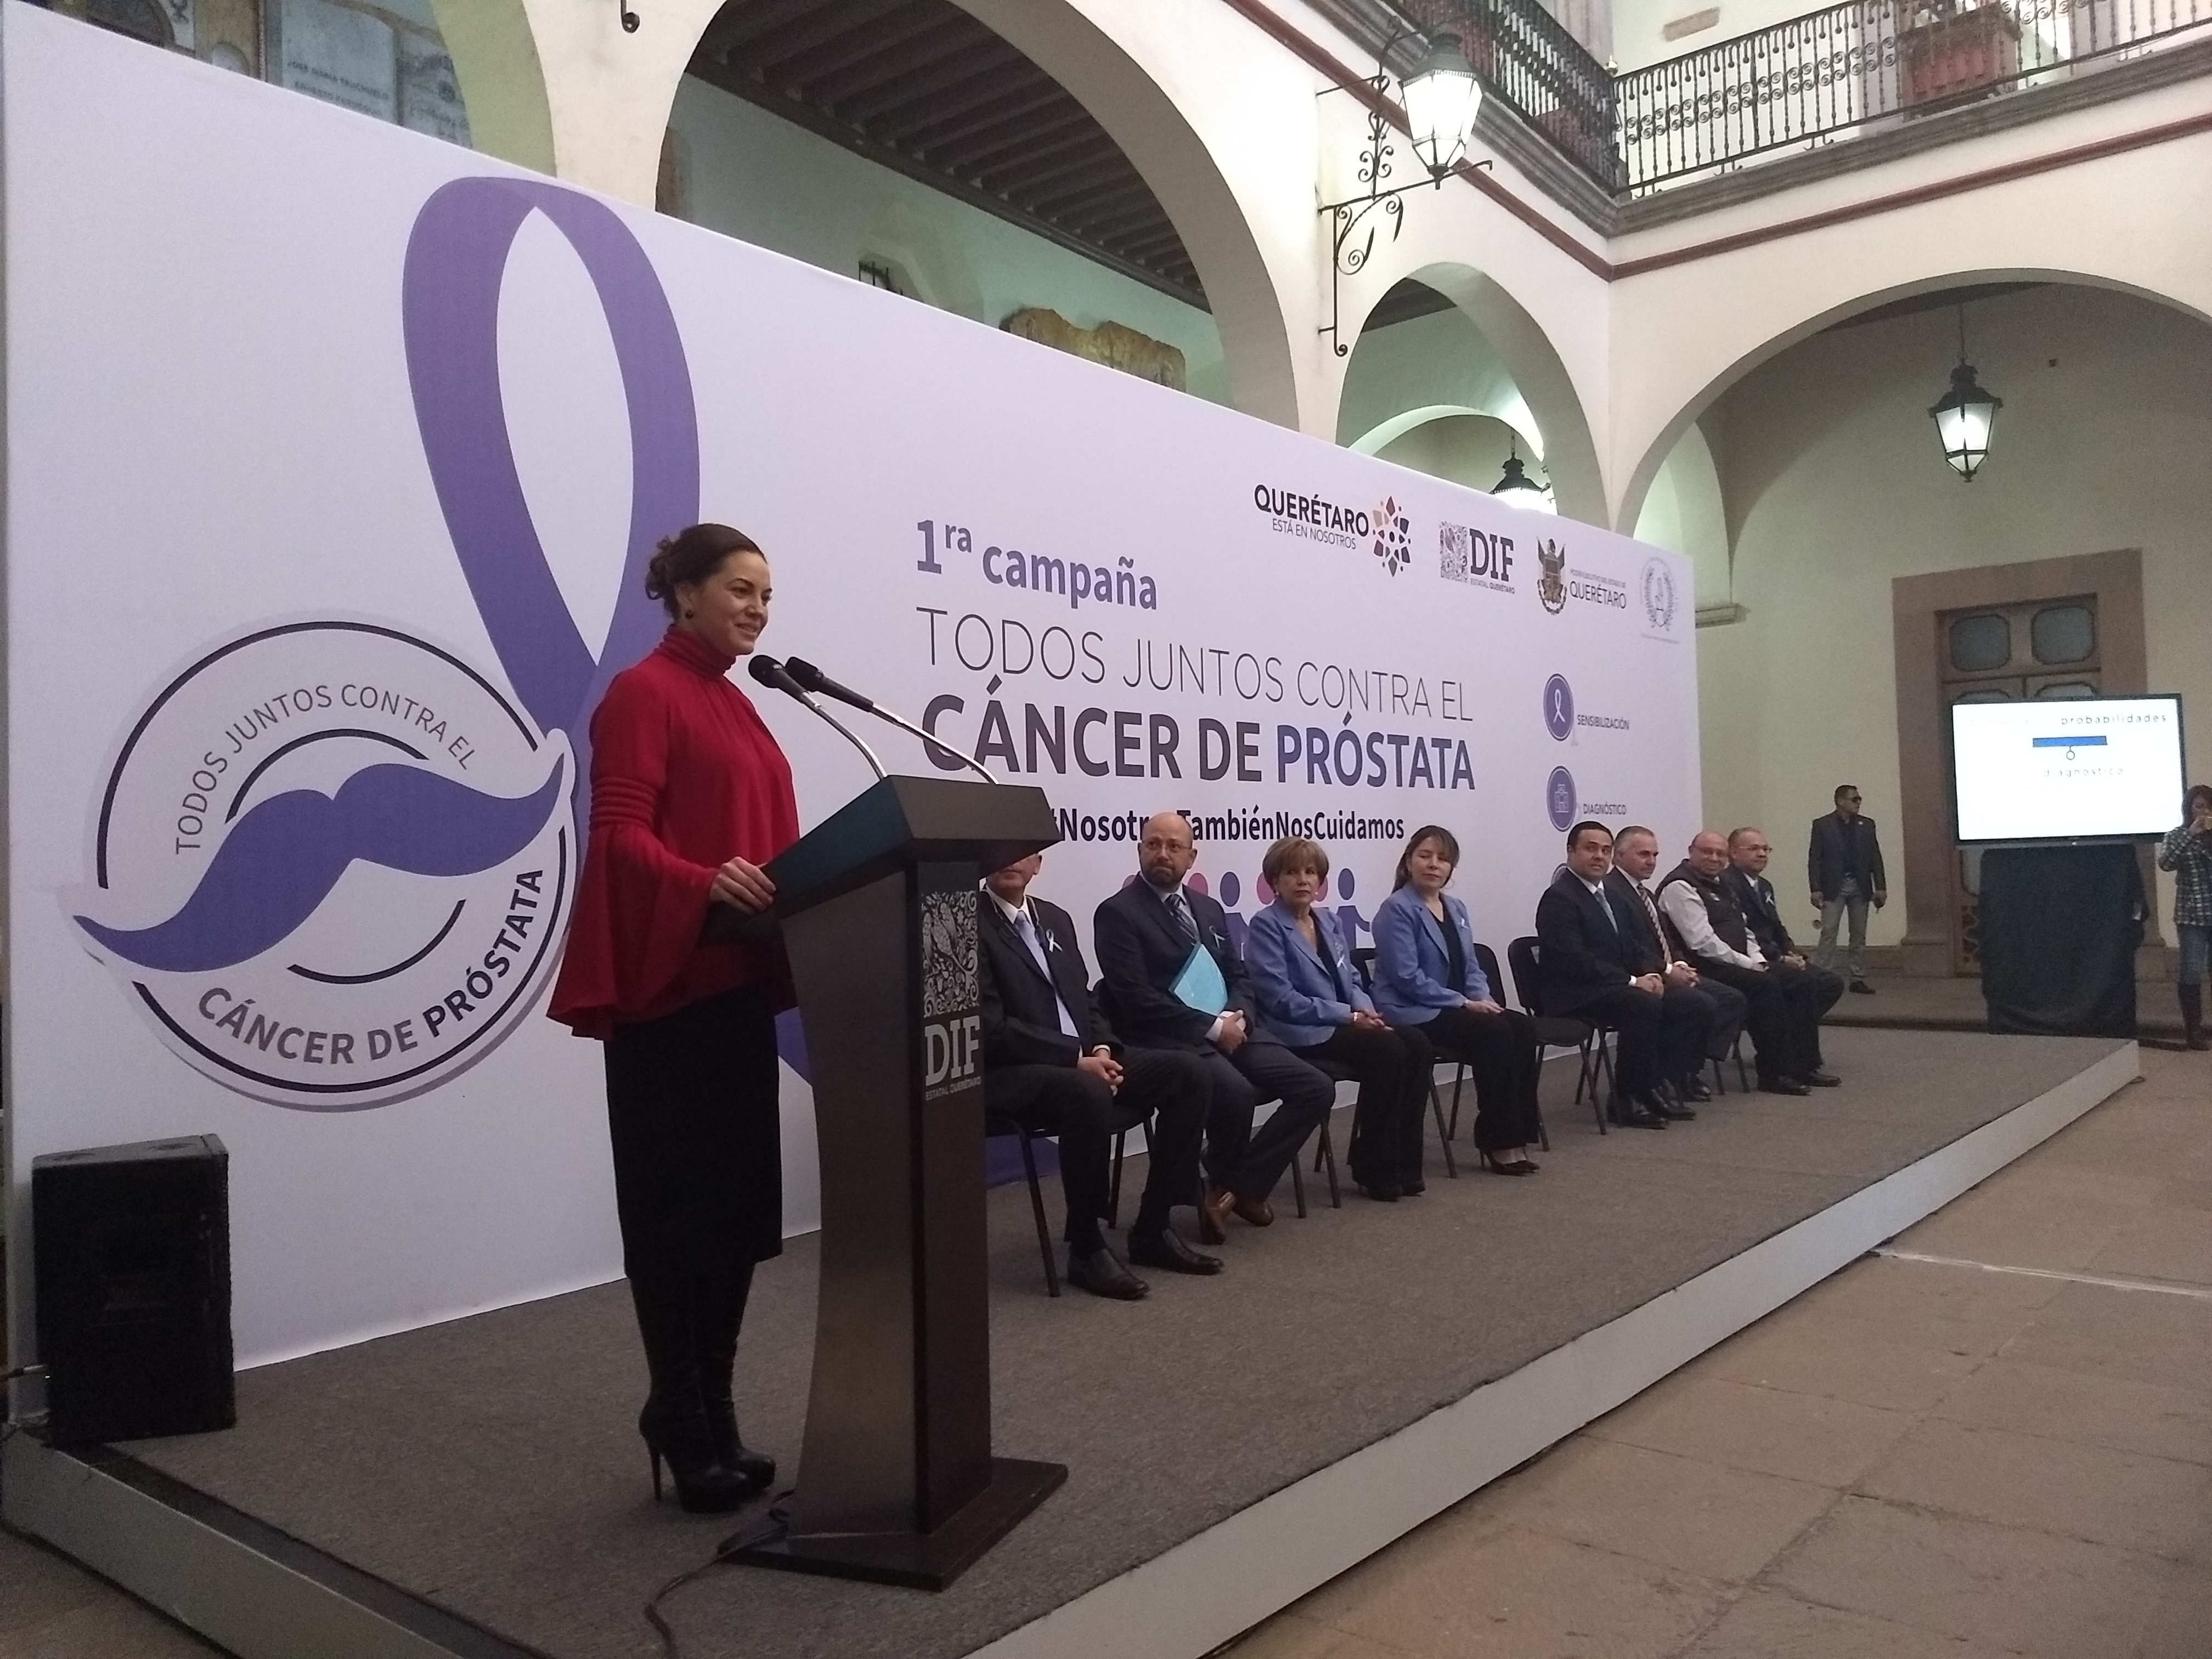  Arrancan campaña contra el cáncer de próstata en Querétaro